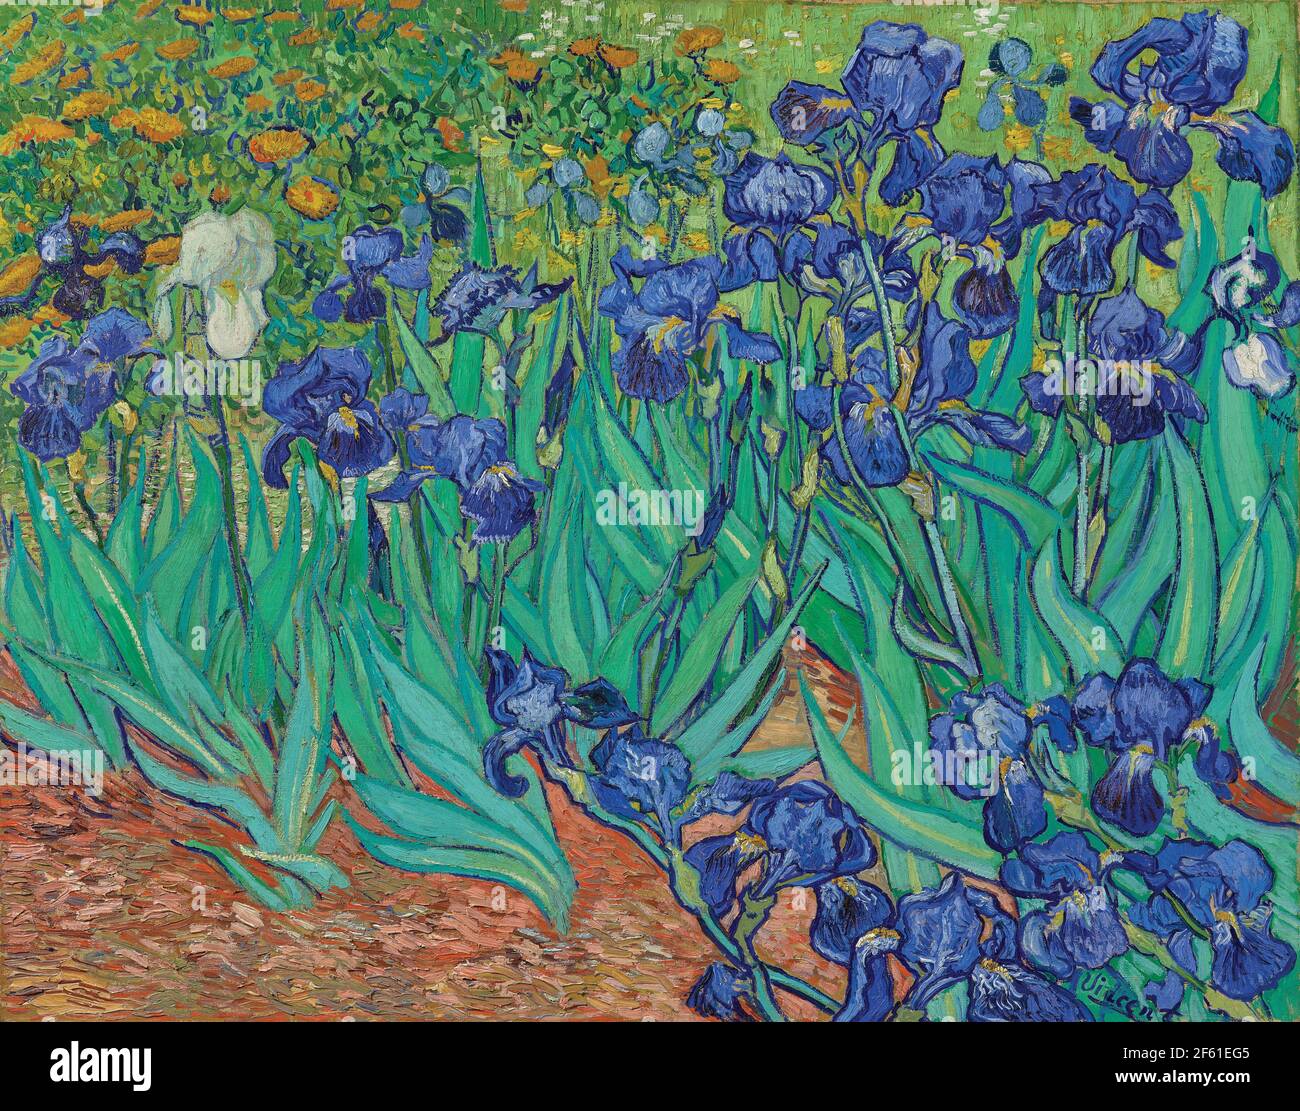 Iris de Vincent van Gogh. Vincent van Gogh, 1853 - 1890, artiste post-impressionniste néerlandais. Les iris ont été peints en 1889 alors que Van Gogh était en asile à Saint-Rémy-de-Provence. L'œuvre est dans la collection du J.Paul Getty Museum à Los Angeles. Banque D'Images